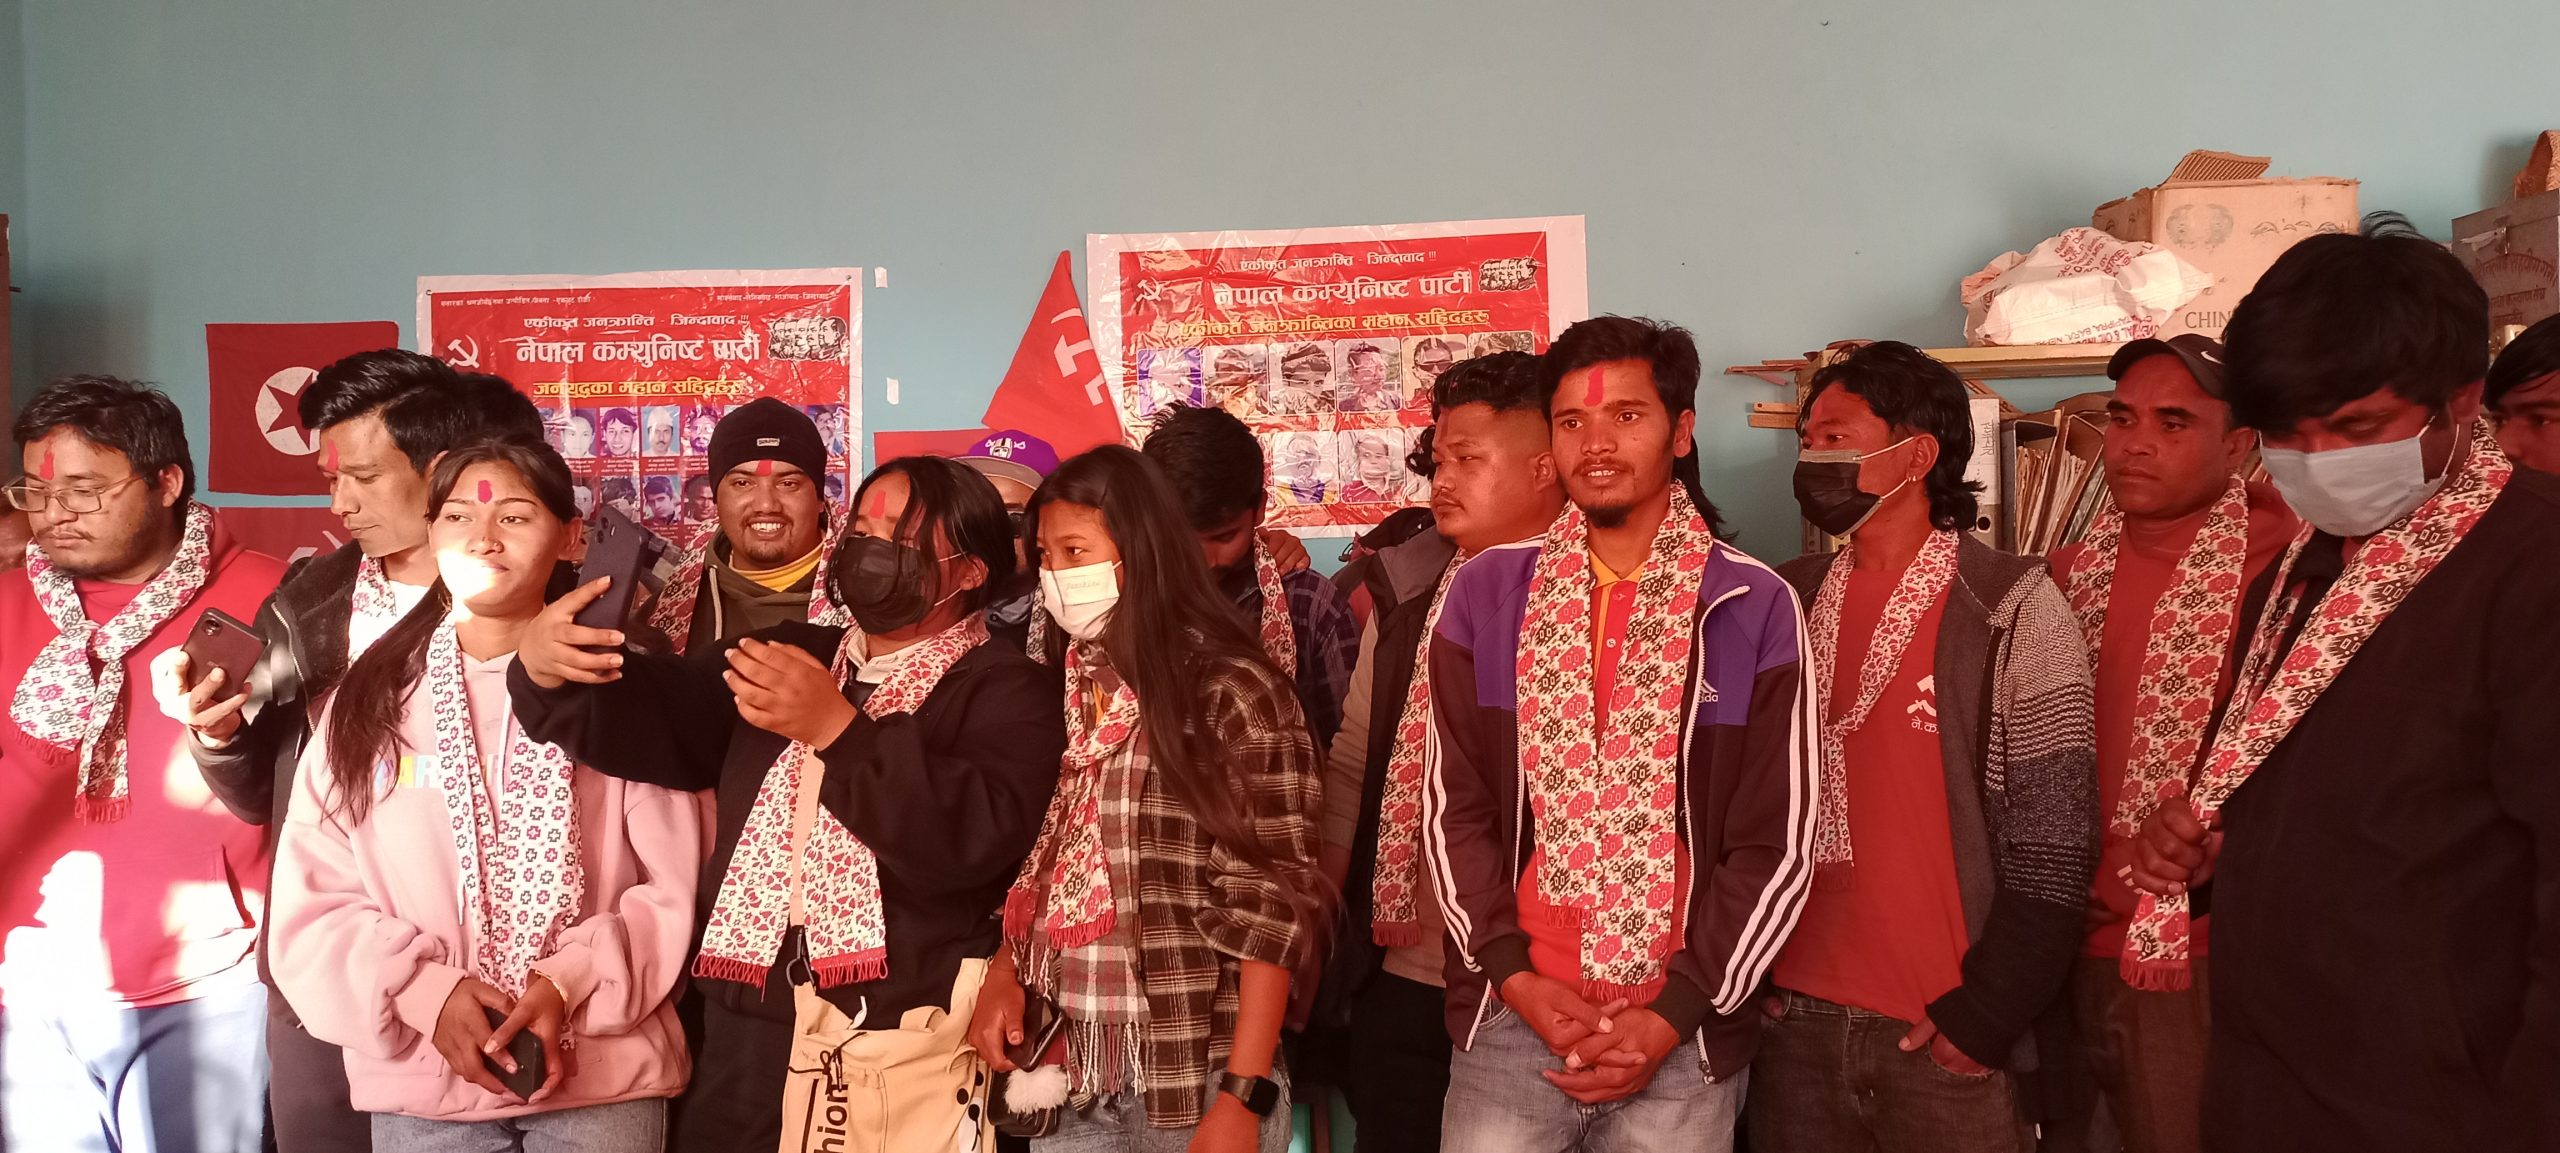 युवा सङ्गठन नेपाल, कास्कीको अध्यक्षमा युवराज